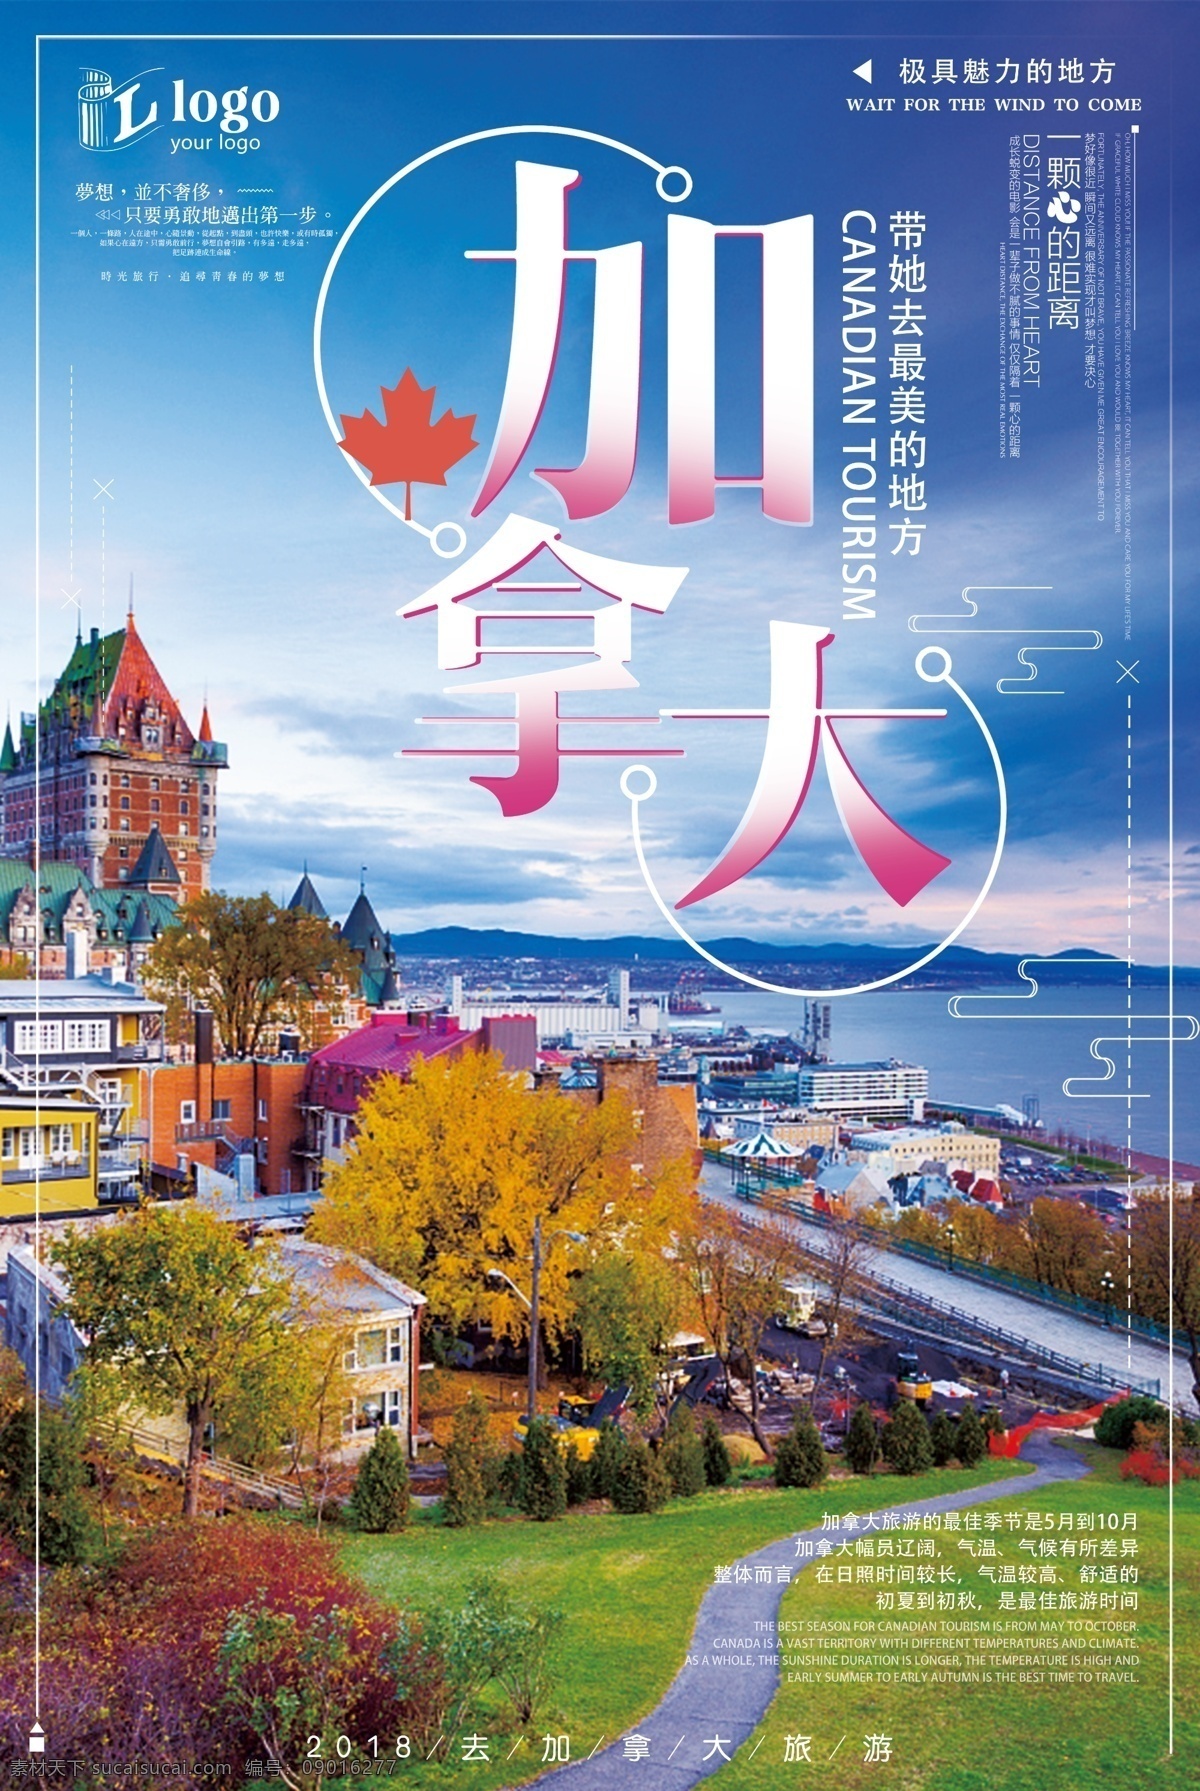 梦幻 简约 大气 加拿大 旅游 创意 宣传海报 创意设计 加拿大旅游 旅游海报 梦幻加拿大 浪漫加拿大 创意简约 大气简约 设计创意